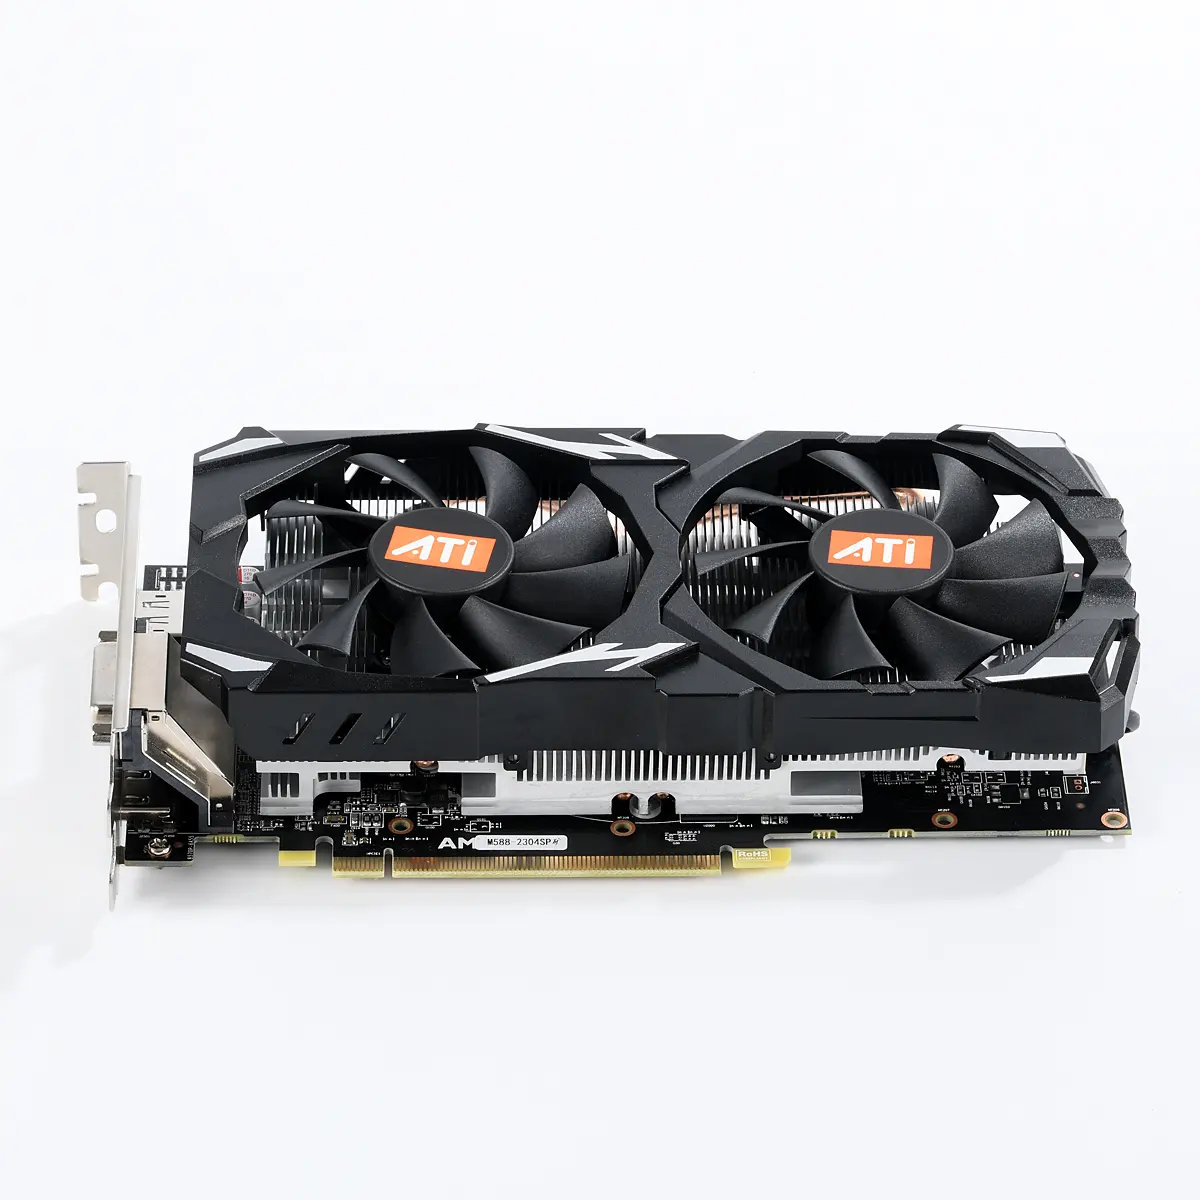 AMD RX580 8gb grafik kartı 256bit ekran kartları marka yeni oyun grafik kartı GPU Rig